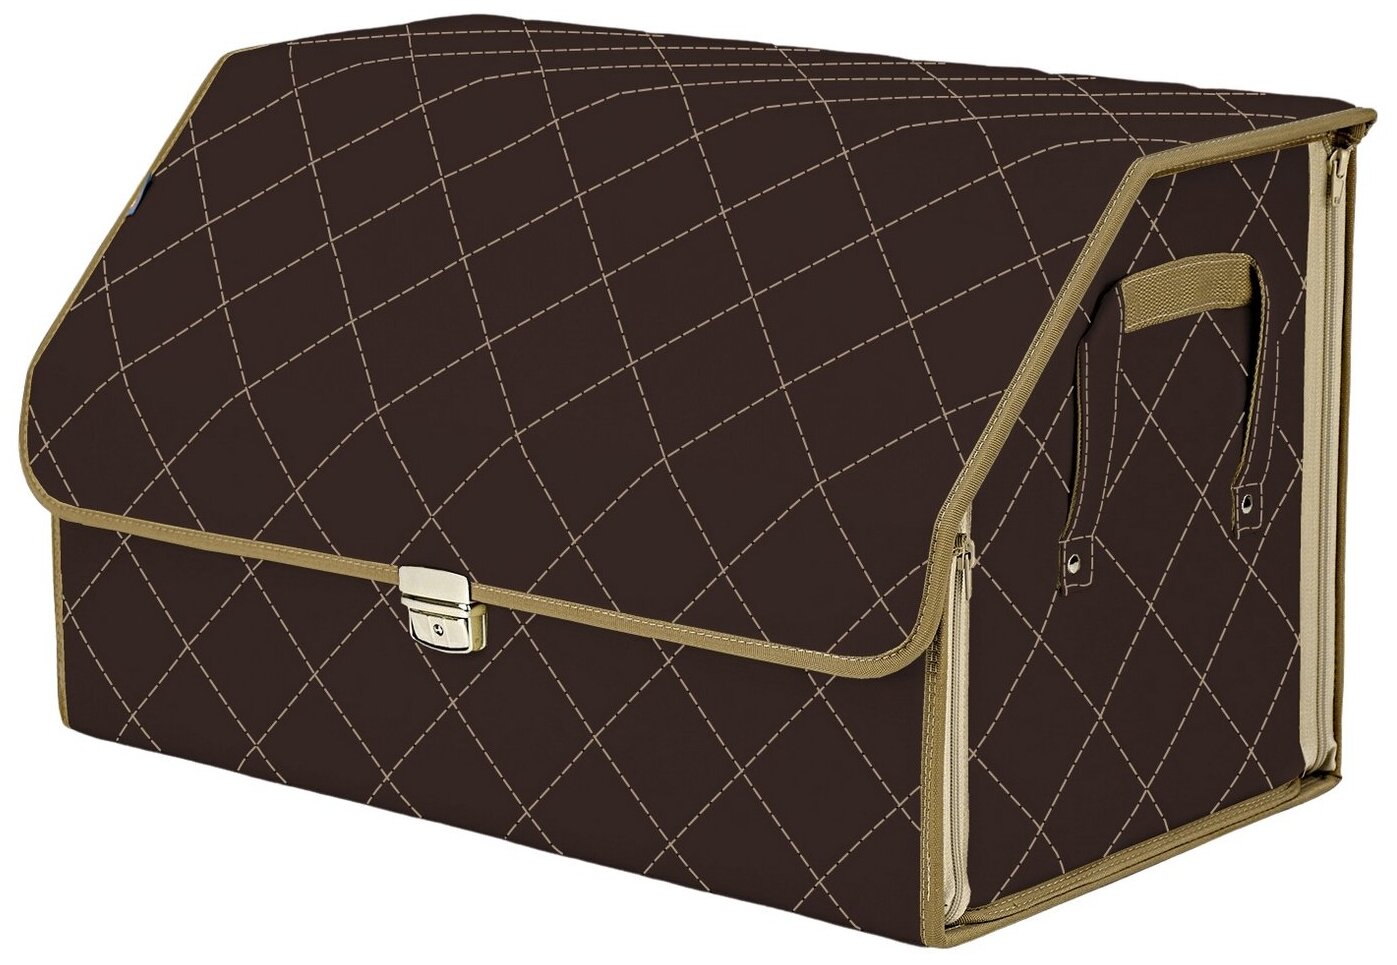 Органайзер-саквояж в багажник "Союз Премиум" (размер XL). Цвет: коричневый с бежевой прострочкой Ромб.